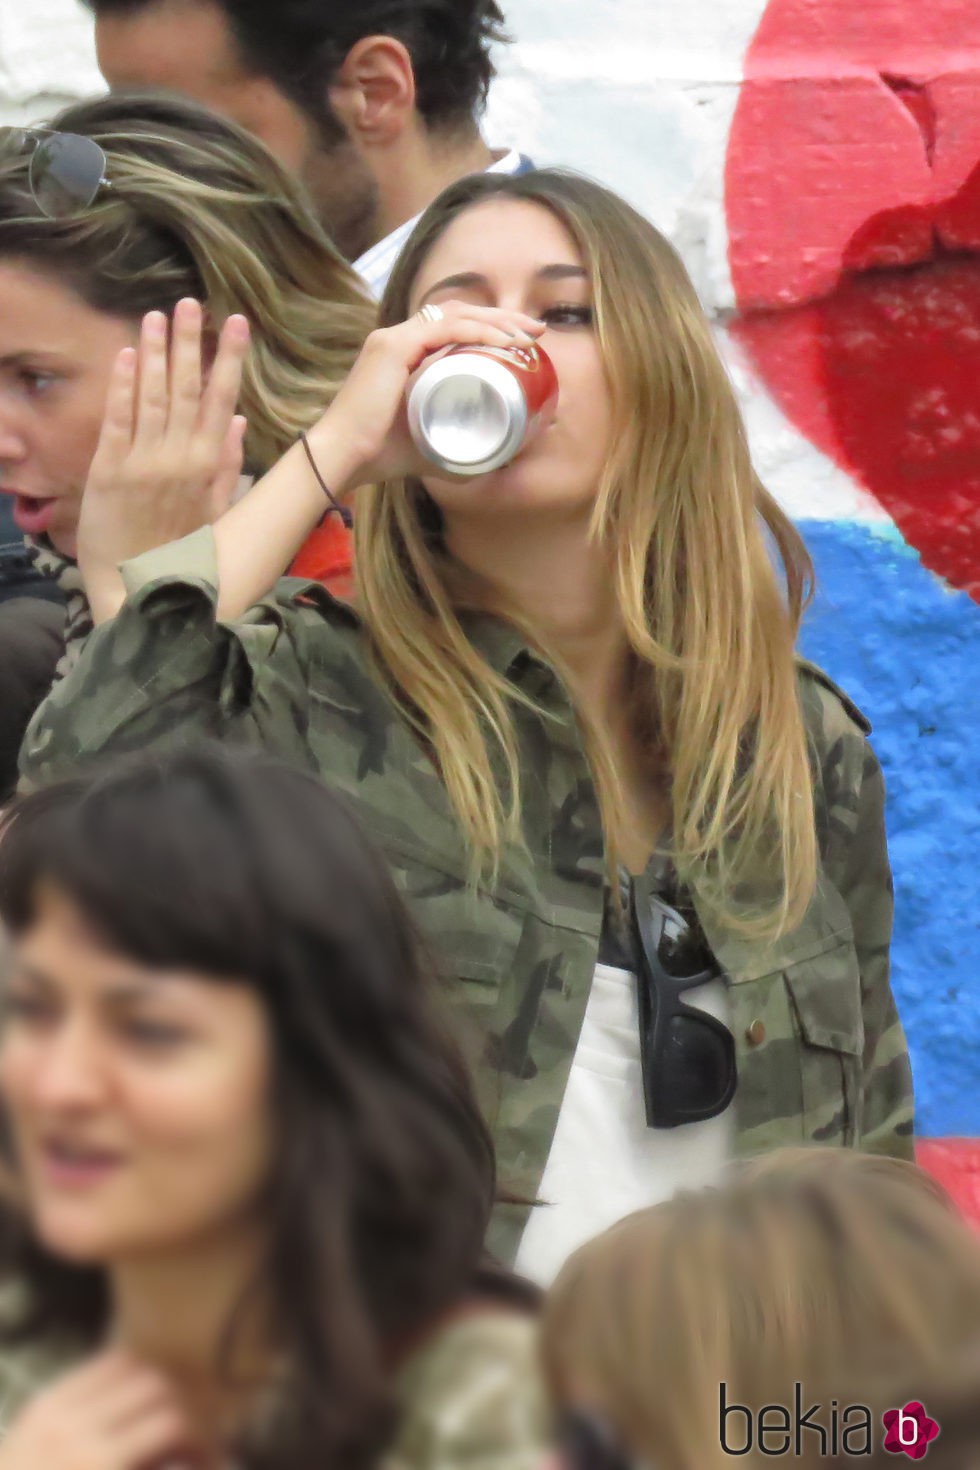 Blanca Suárez bebiendo cerveza